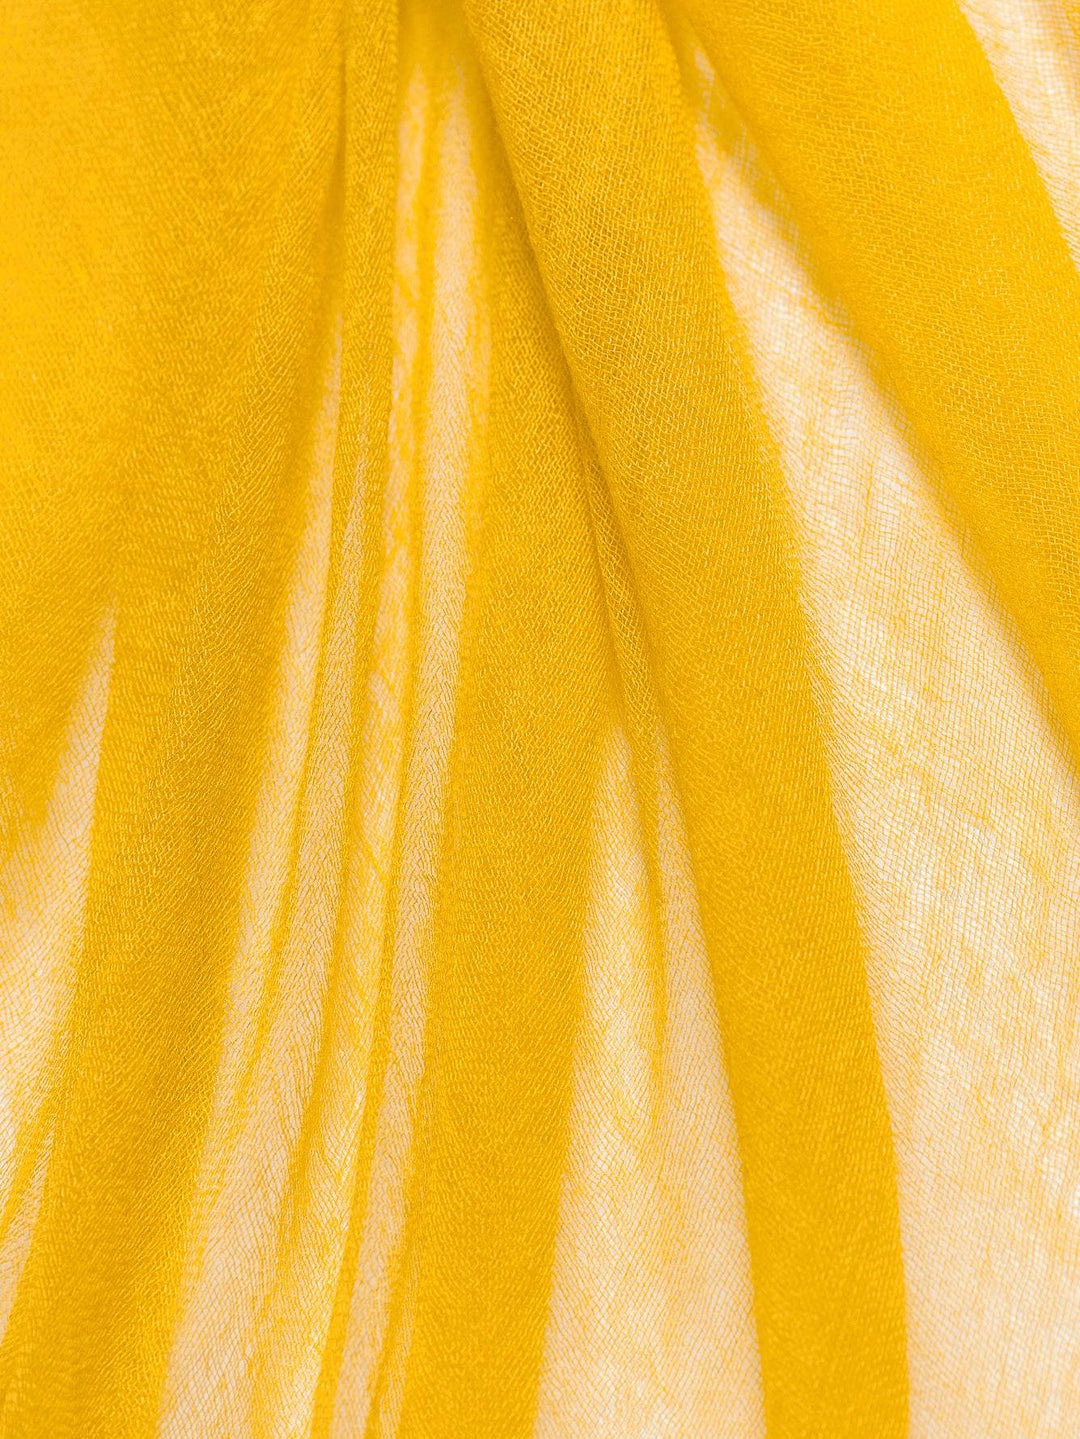 Alfresco Bright Yellow - Dianora Salviati - Ileana Makri store